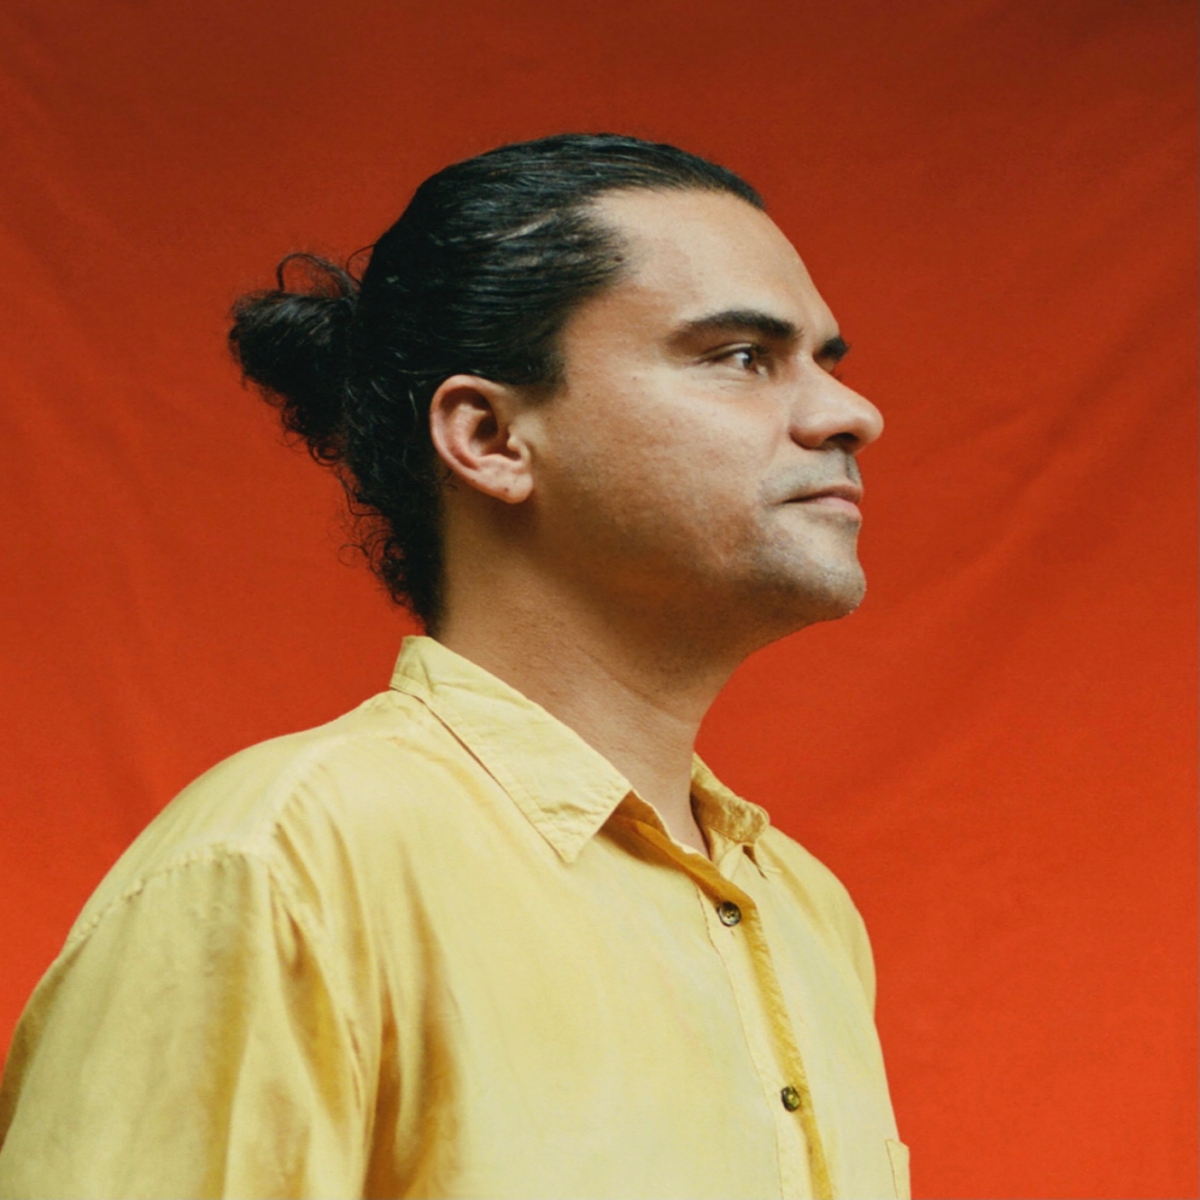 Luis Rincón Alba headshot red background